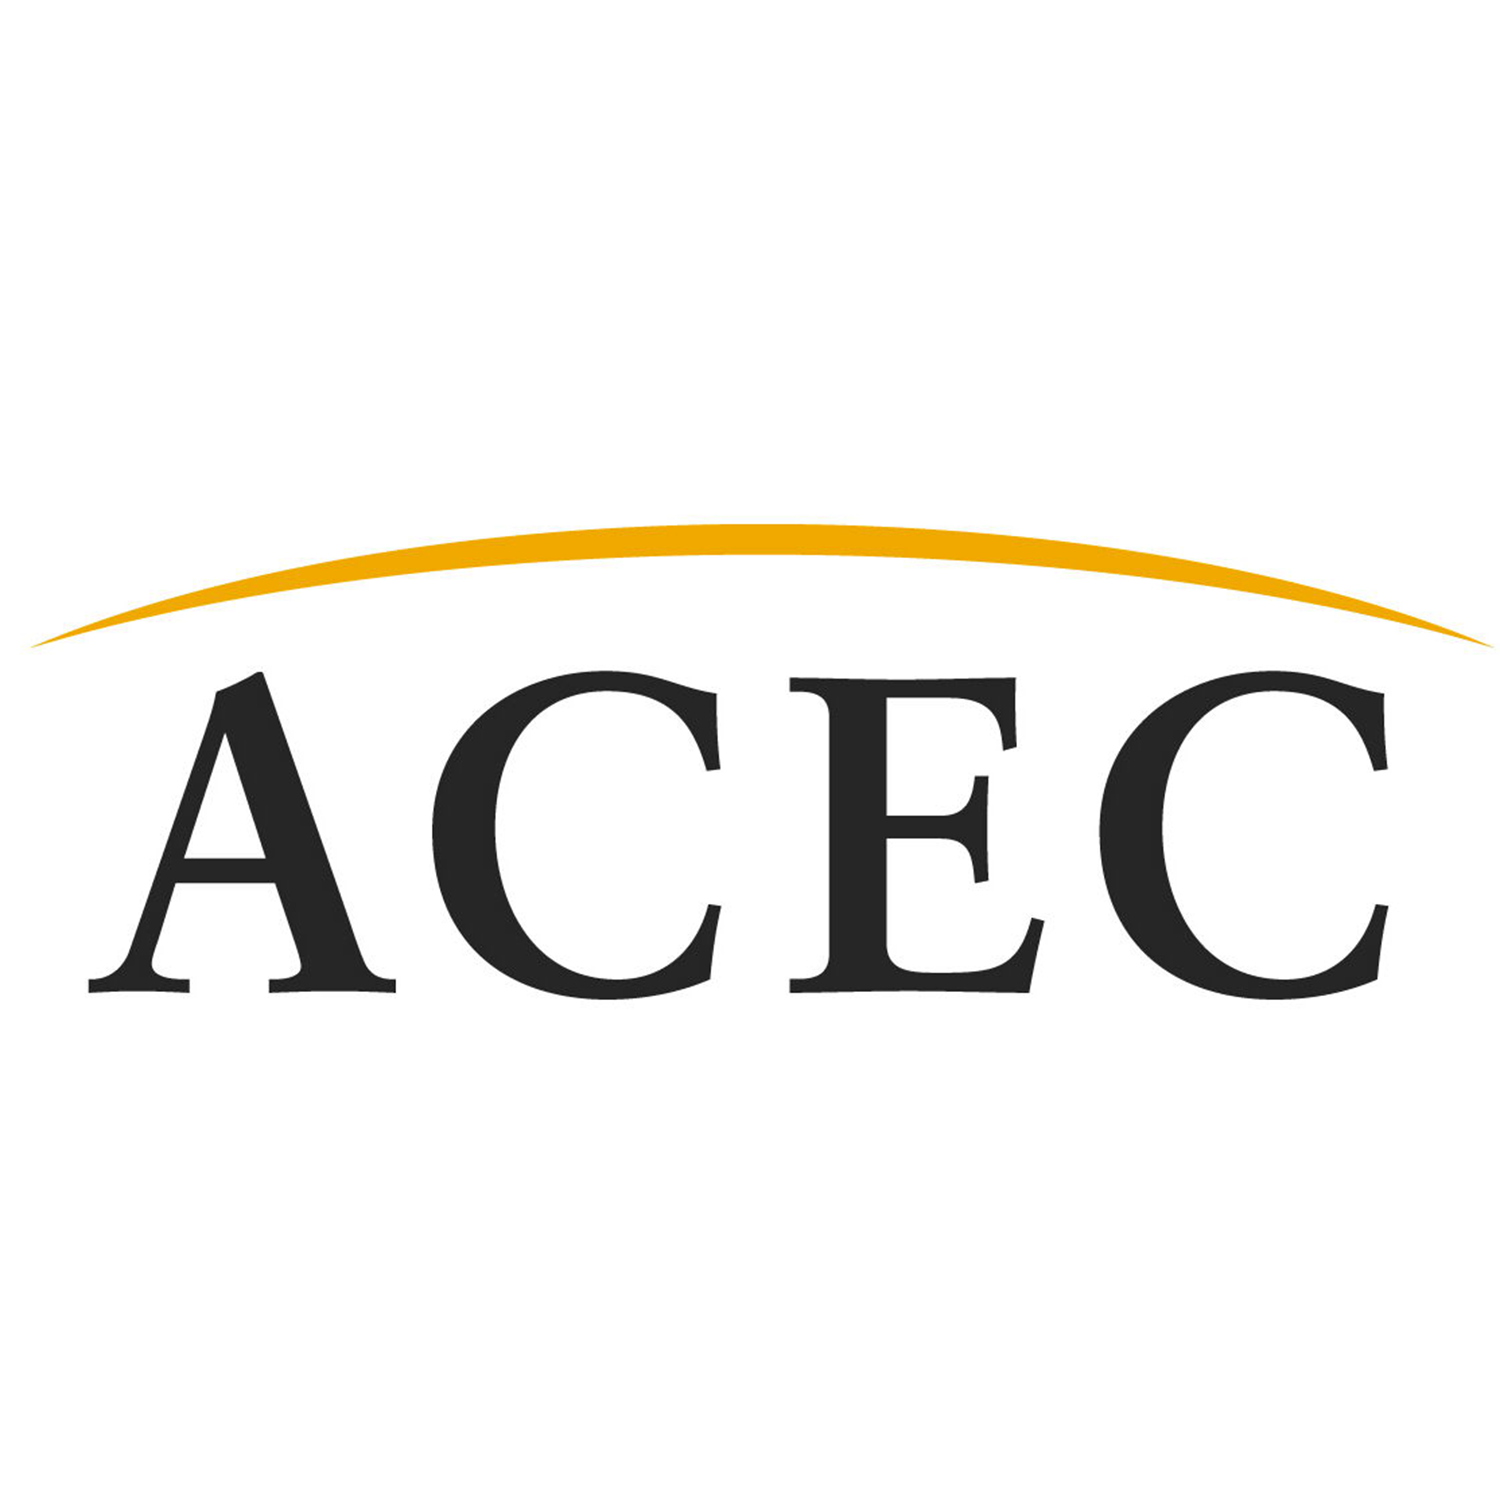 ACEC company